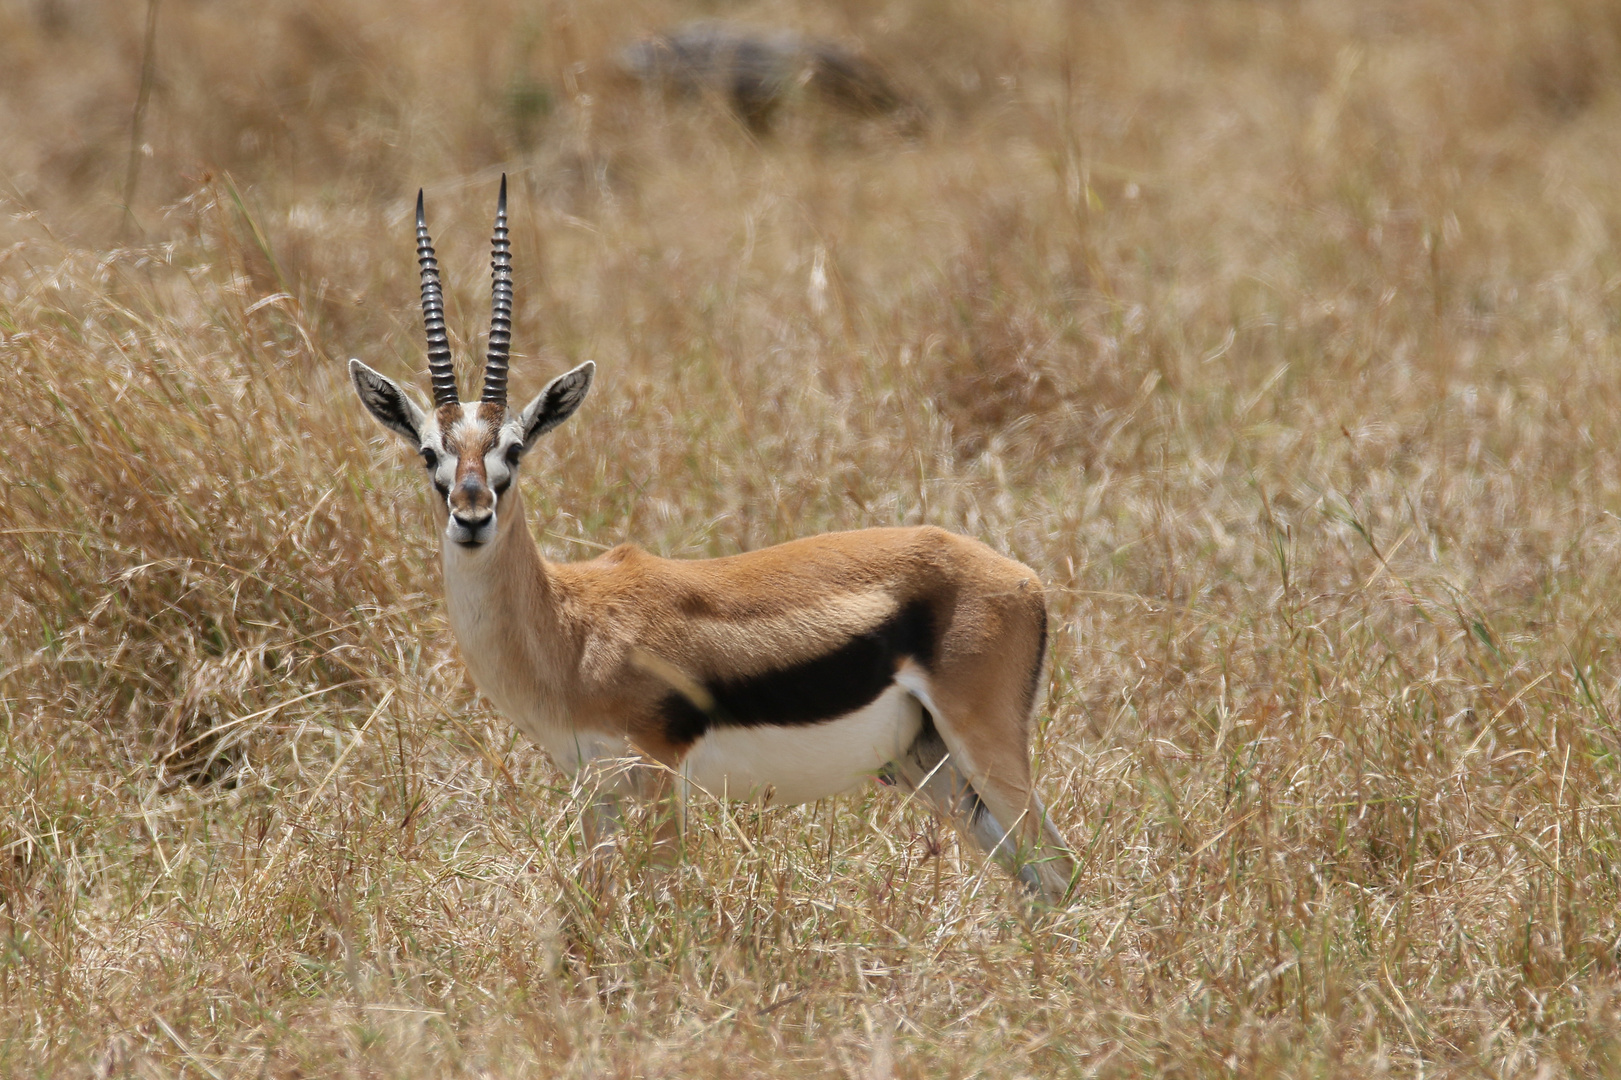 Safari Masai Mara 2016 - Thomson Gazelle Männchen